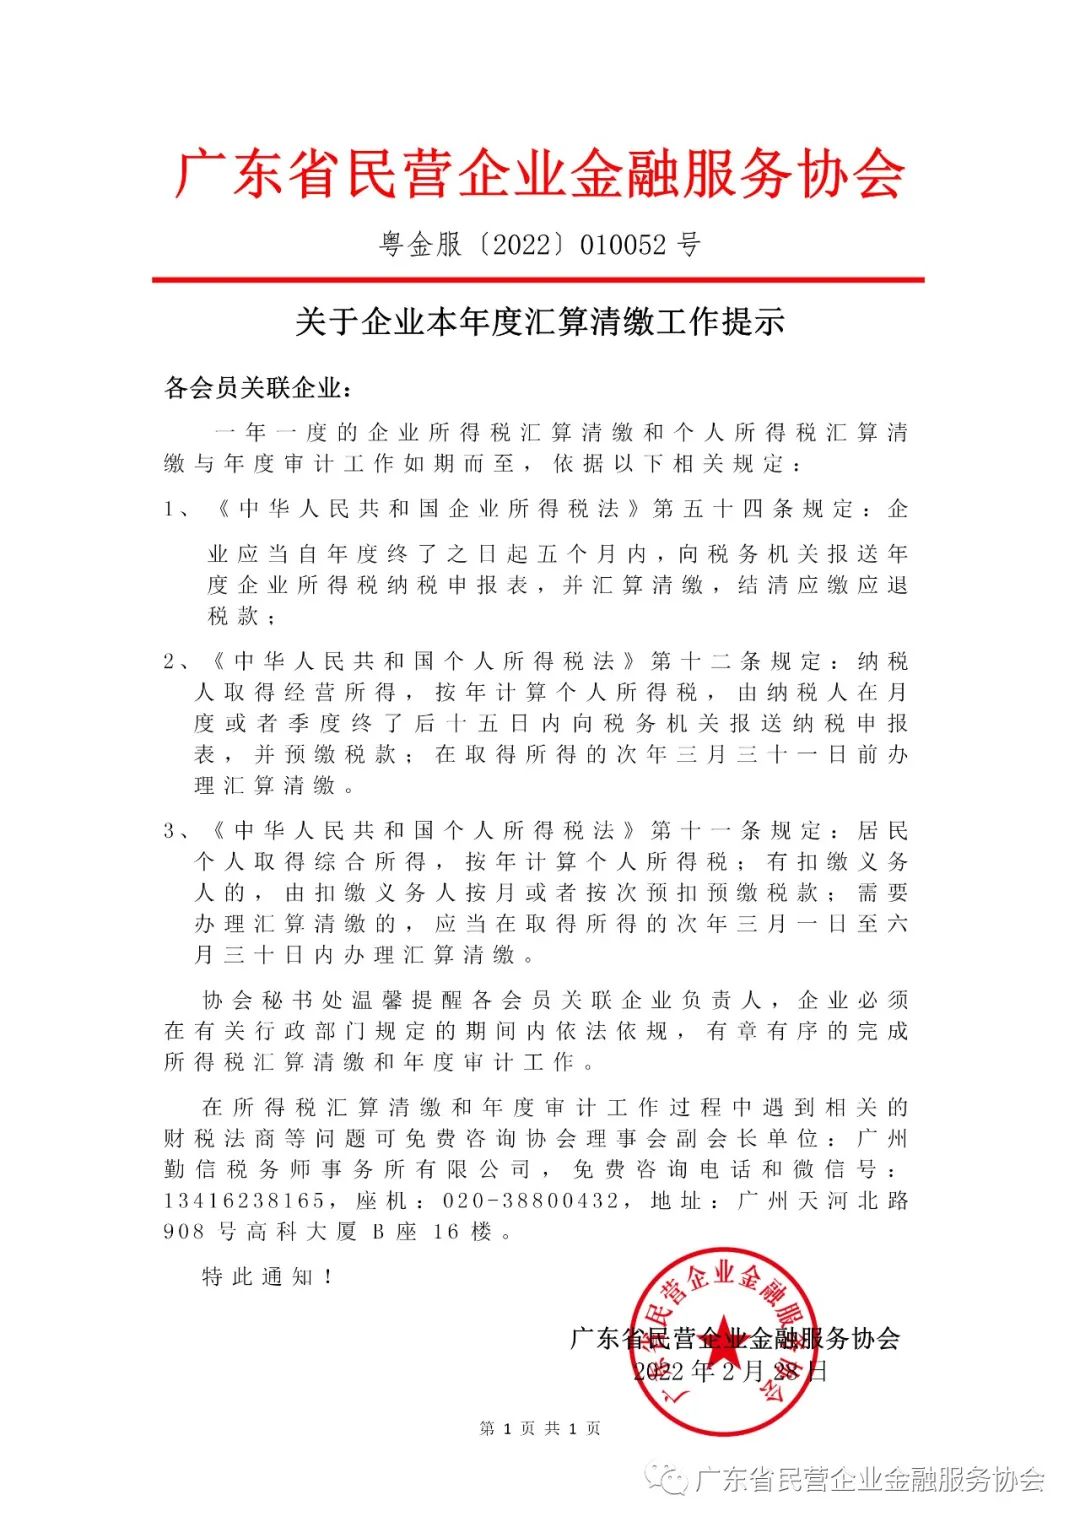 广东省民营企业金融服务协会关于企业本年度汇算清缴工作提示